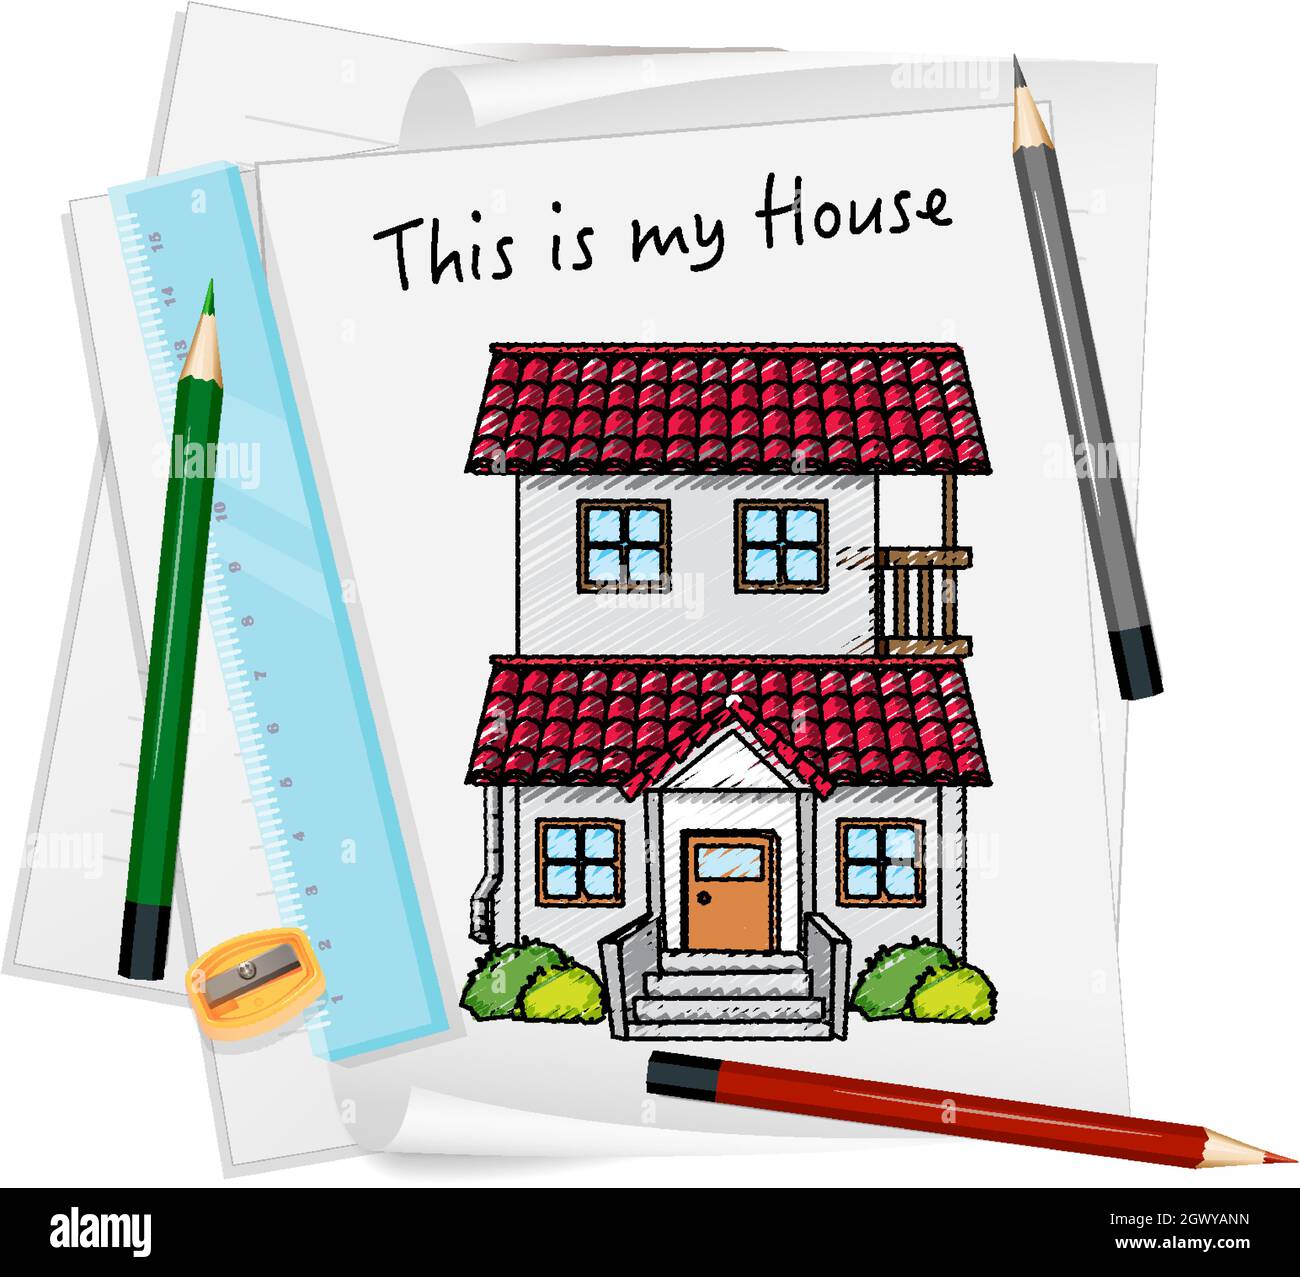 Skizze kleines Haus auf Papier isoliert Illustration Stock-Vektorgrafik -  Alamy